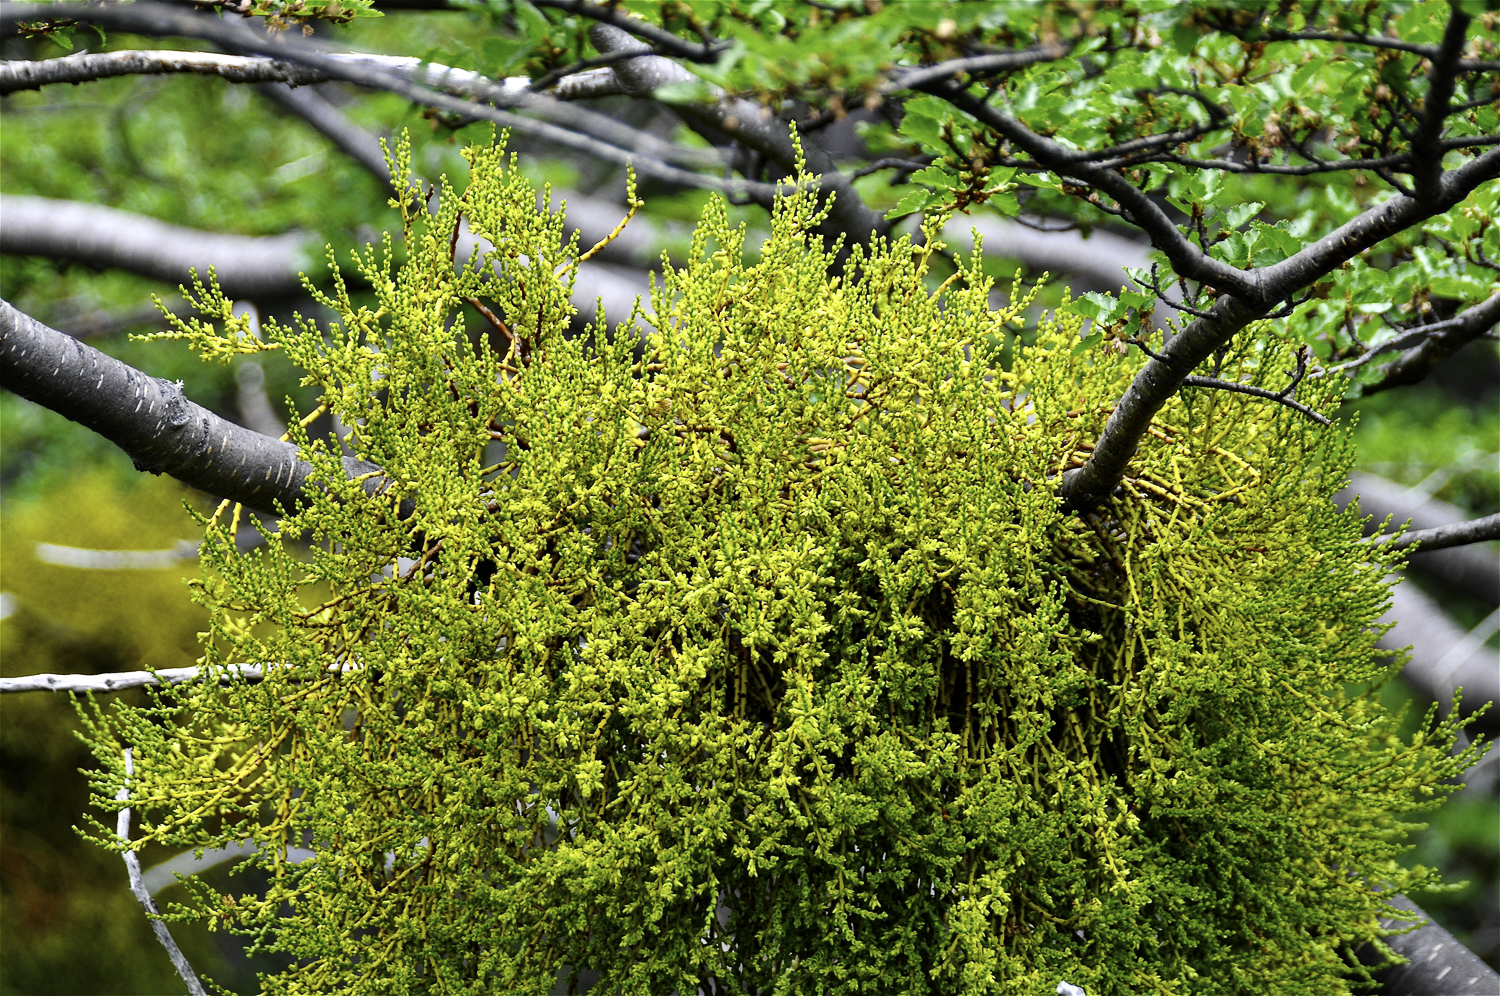 ePostcard #103: Under the Mistletoe (Tierra del Fuego)